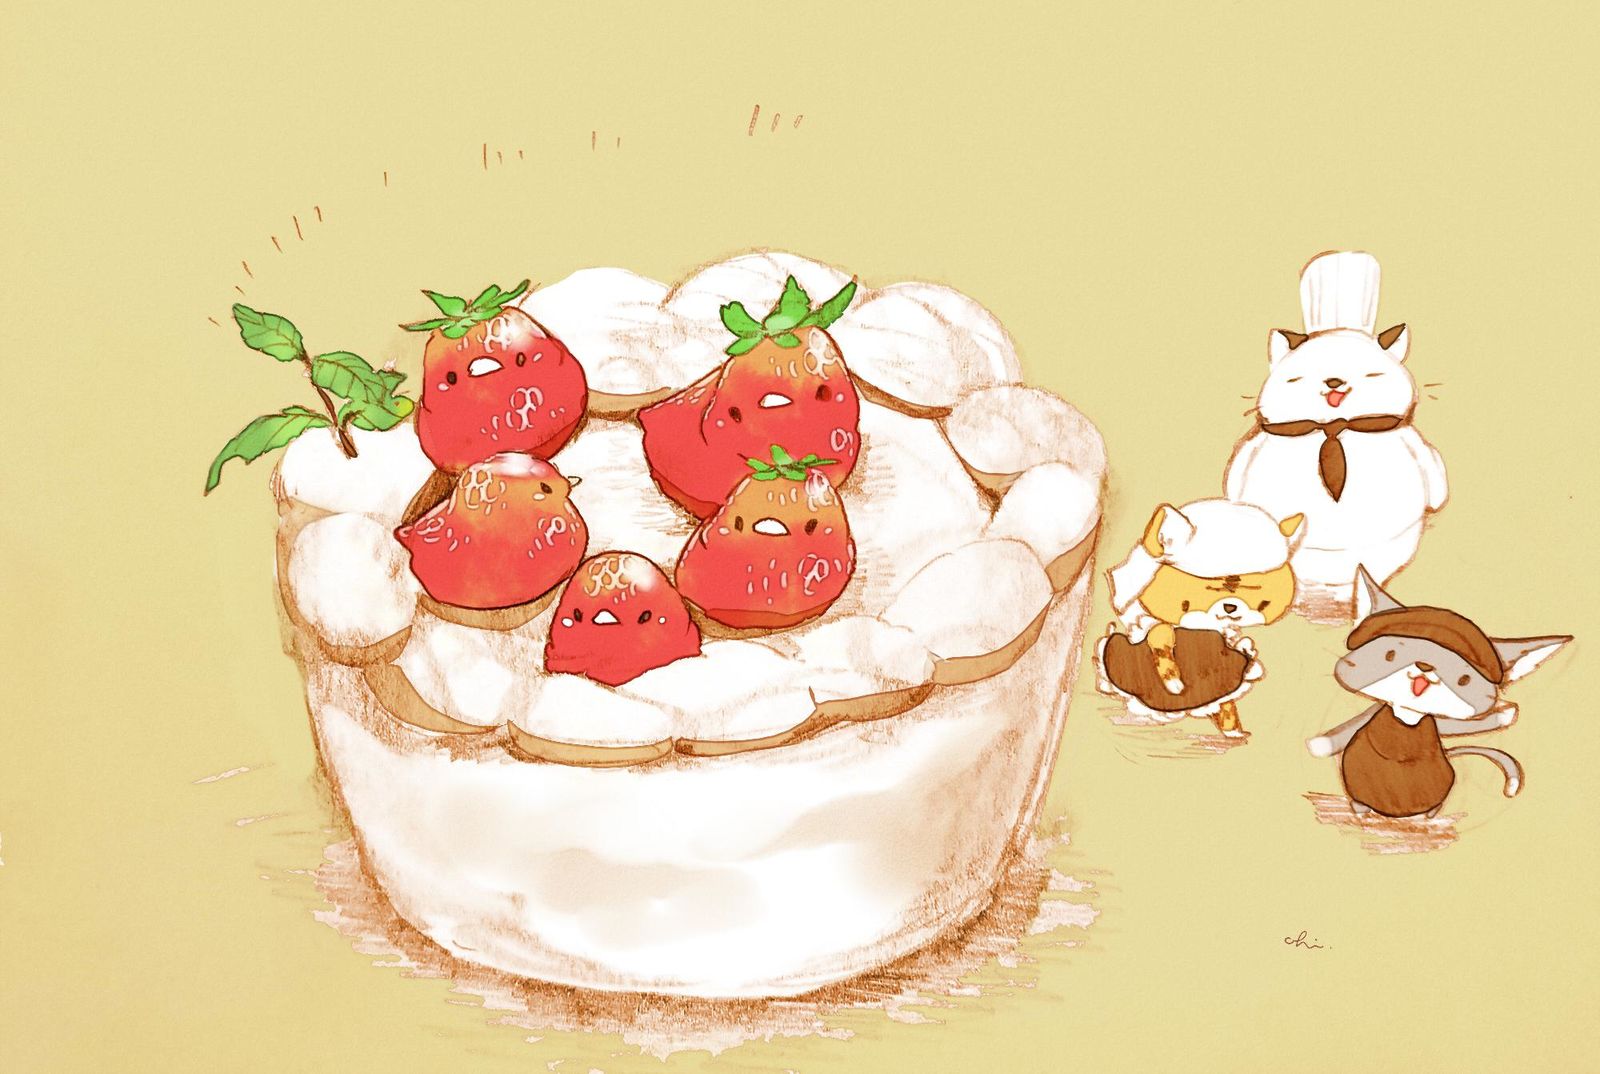 草莓迷你蛋糕插画图片壁纸